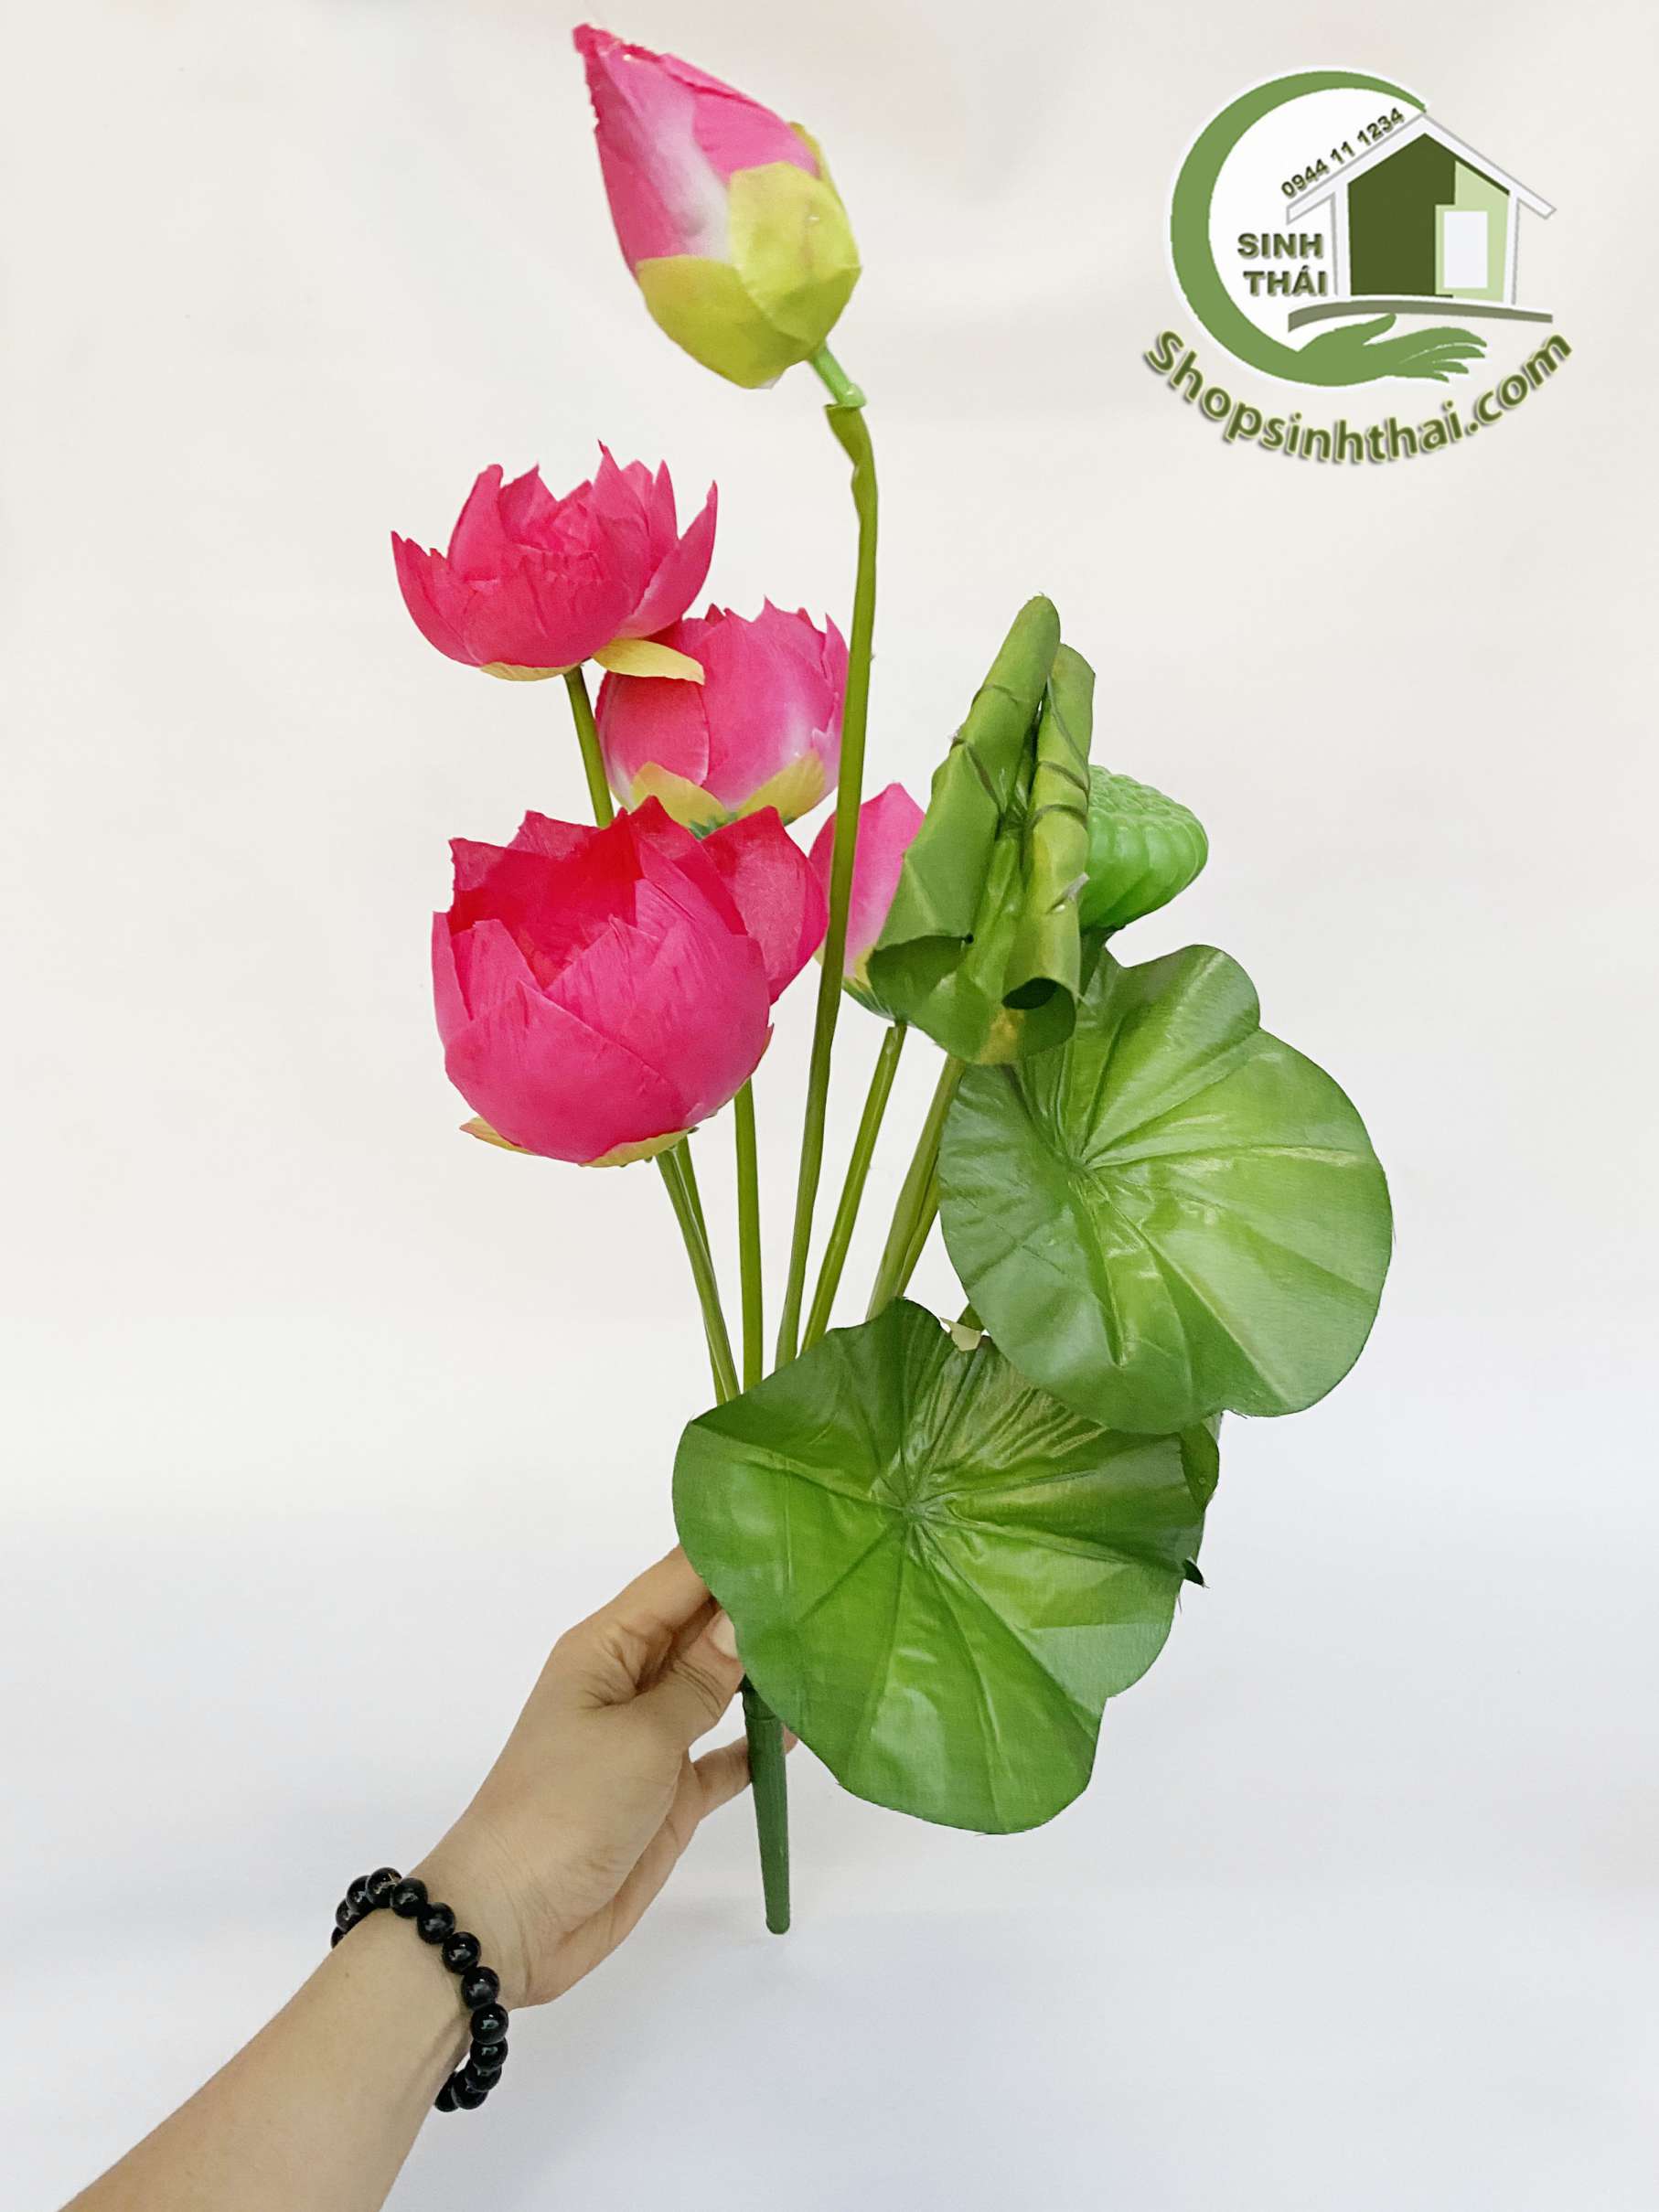 Hoa sen giả - Bụi sen lá cuốn lớn